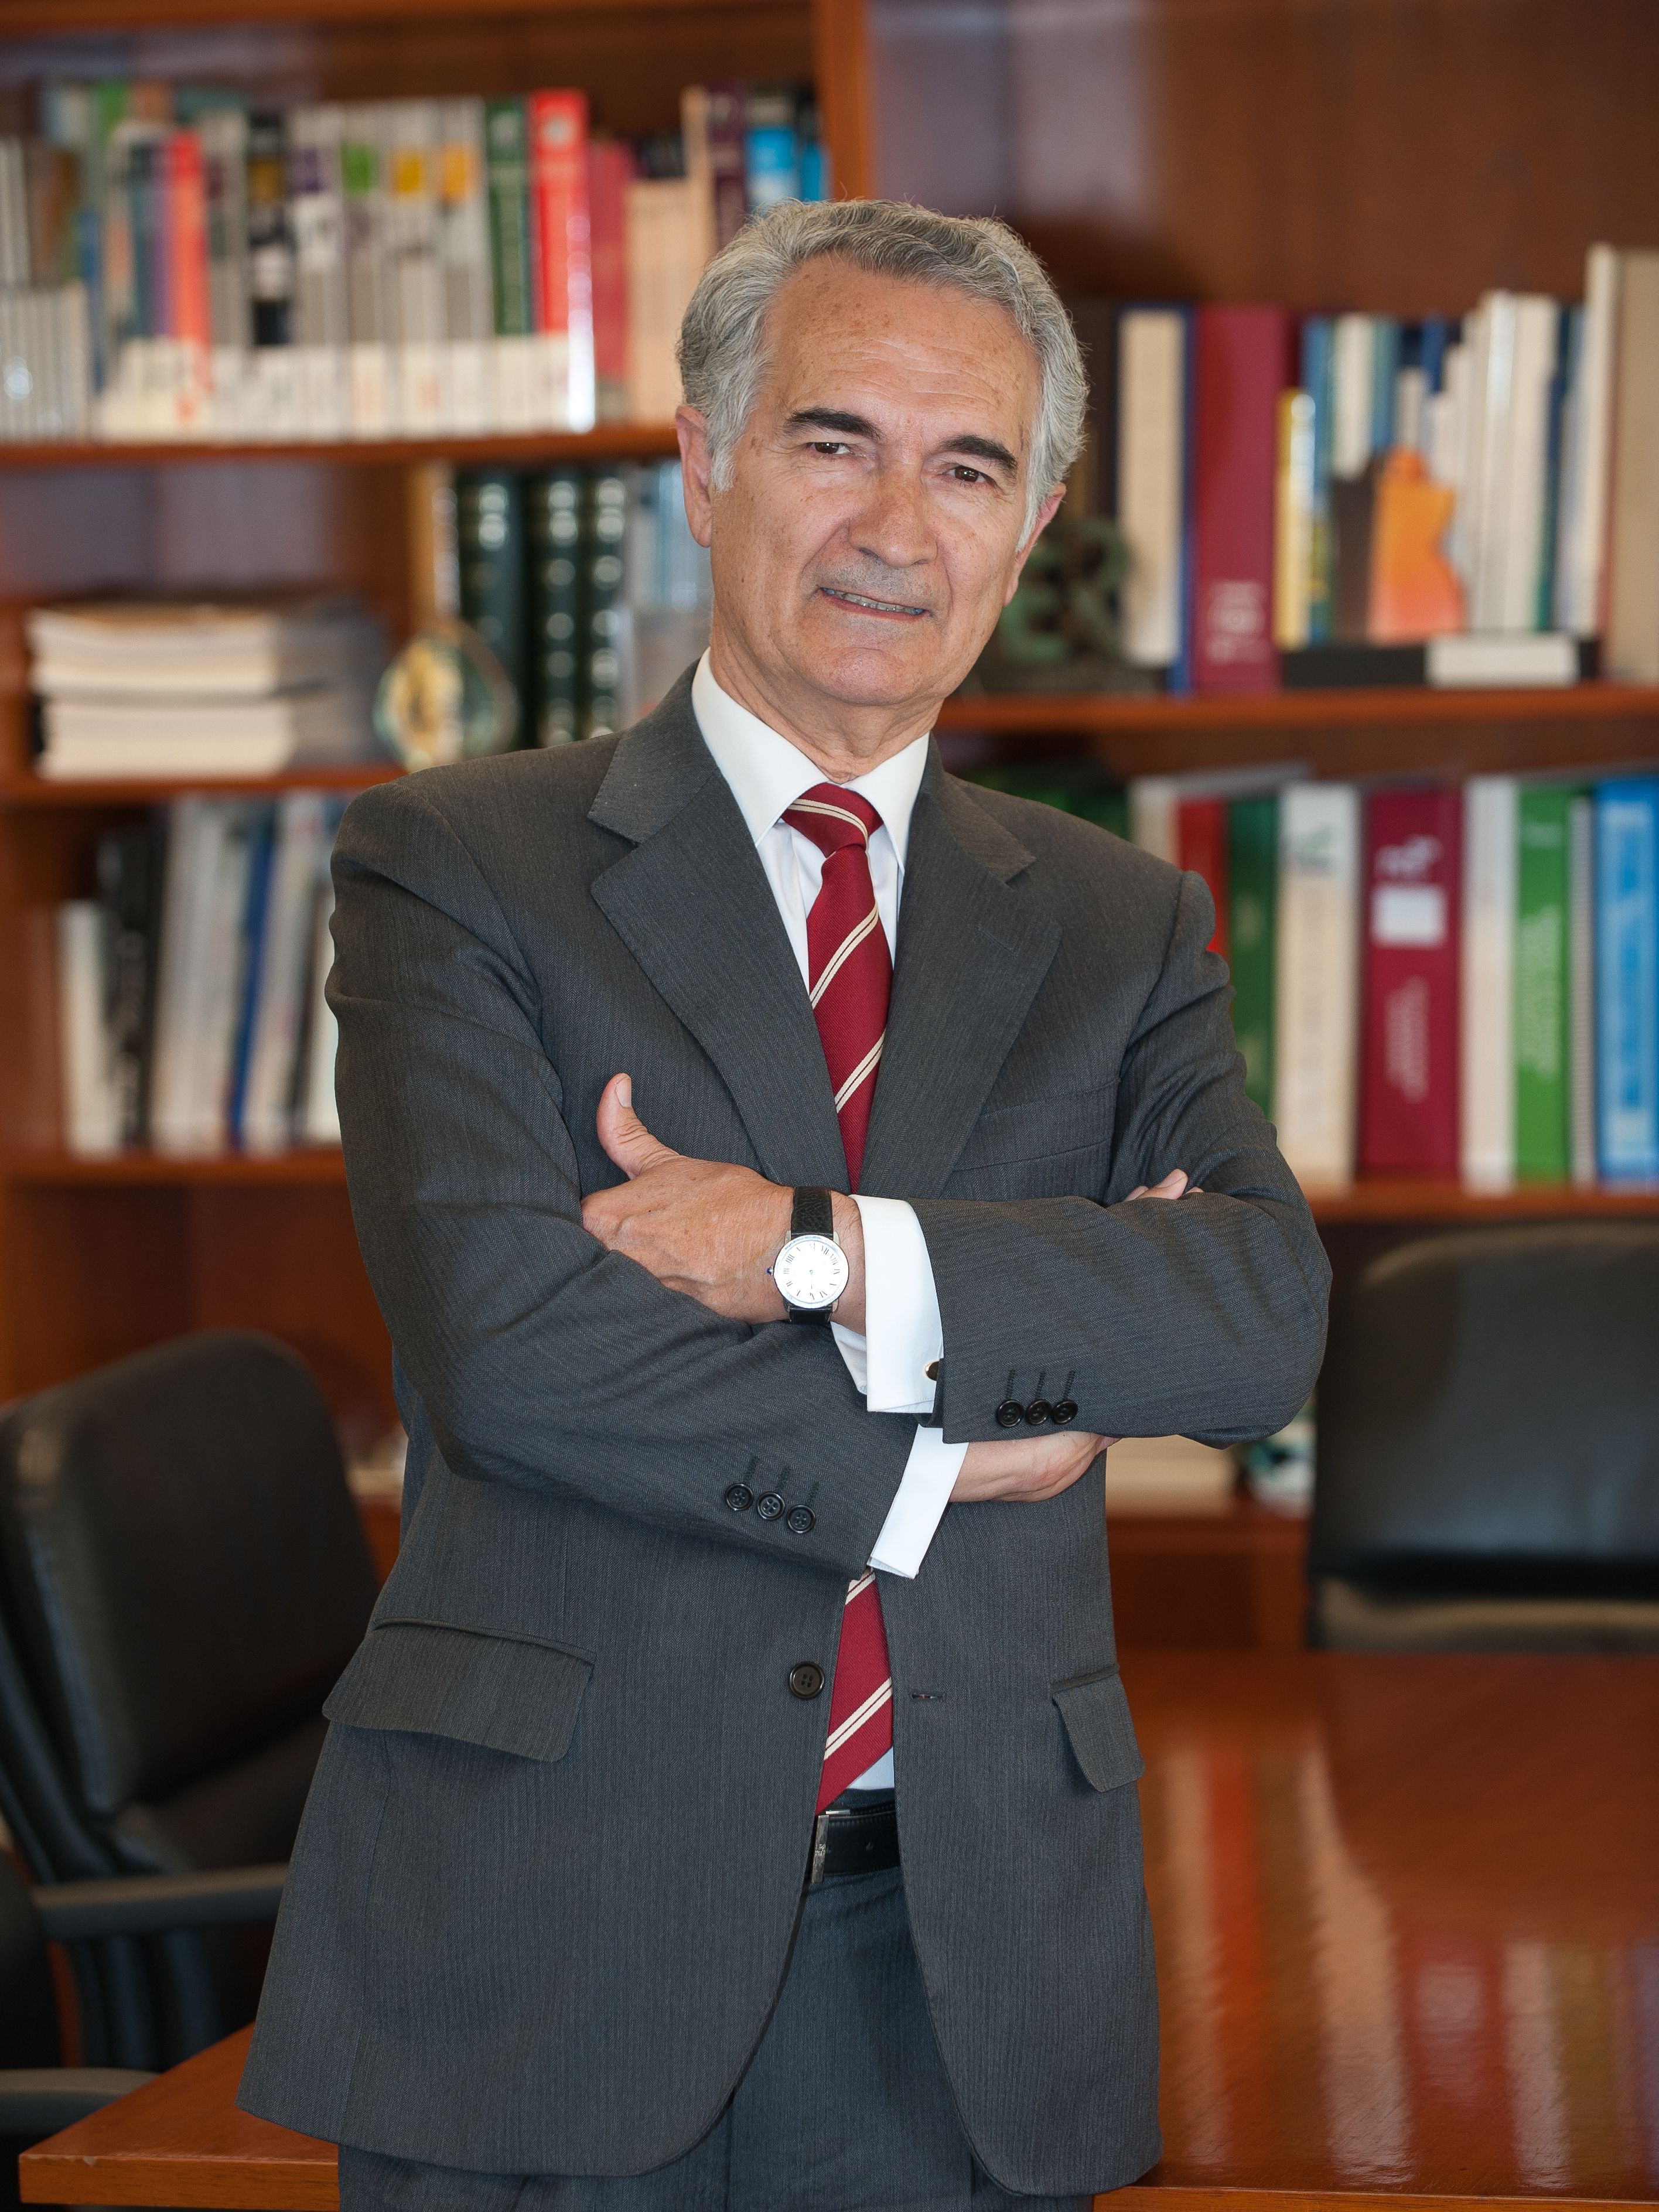 Fernando Moreno García, Chairman of FCC Construction